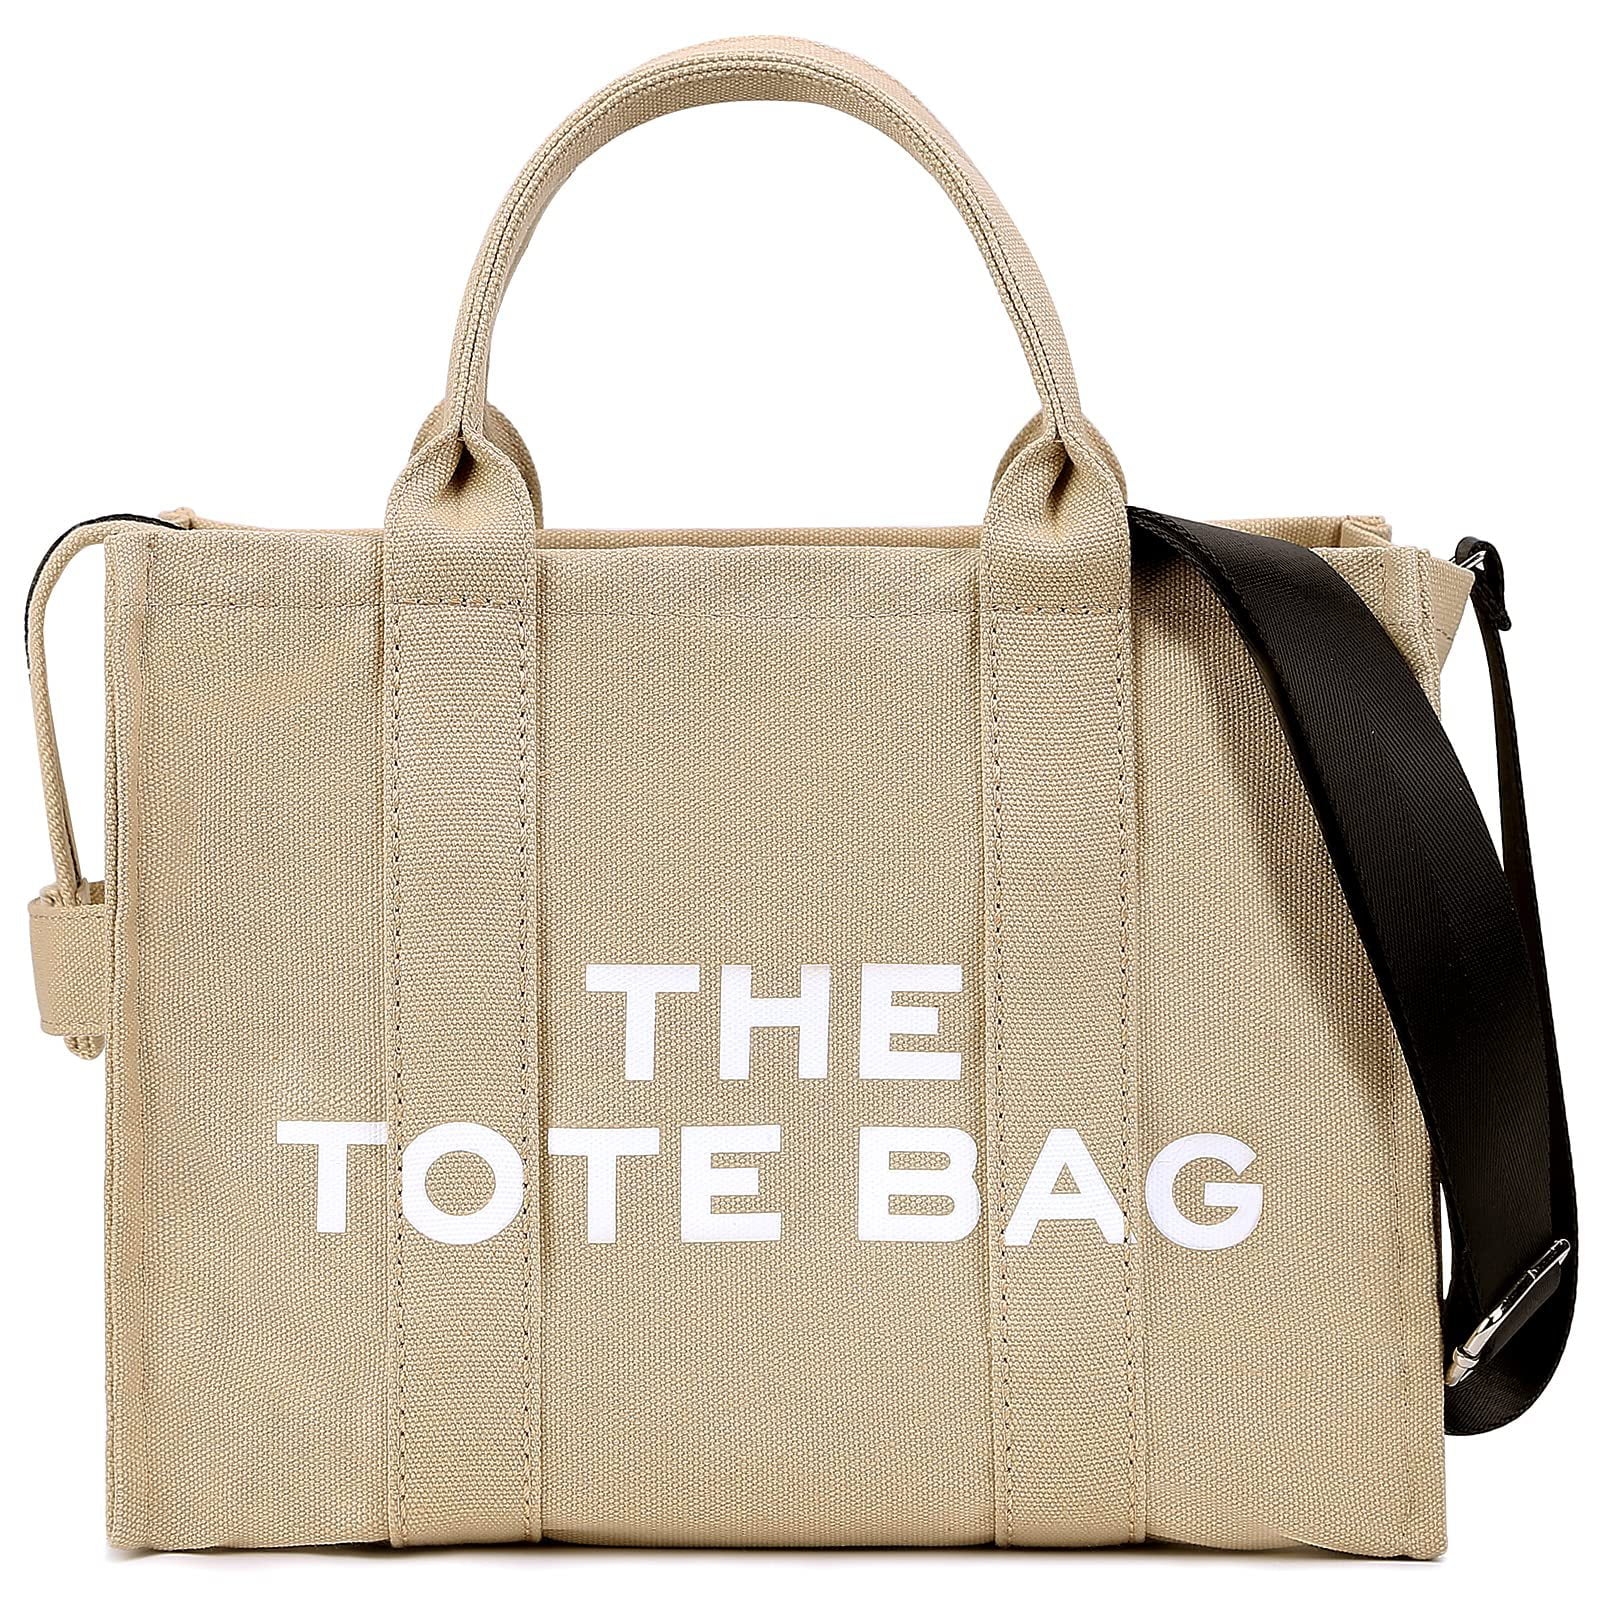 Topio Bag Tote Bag for Women Zipper Bag Canvas Bag Cute Bag - Walmart.com